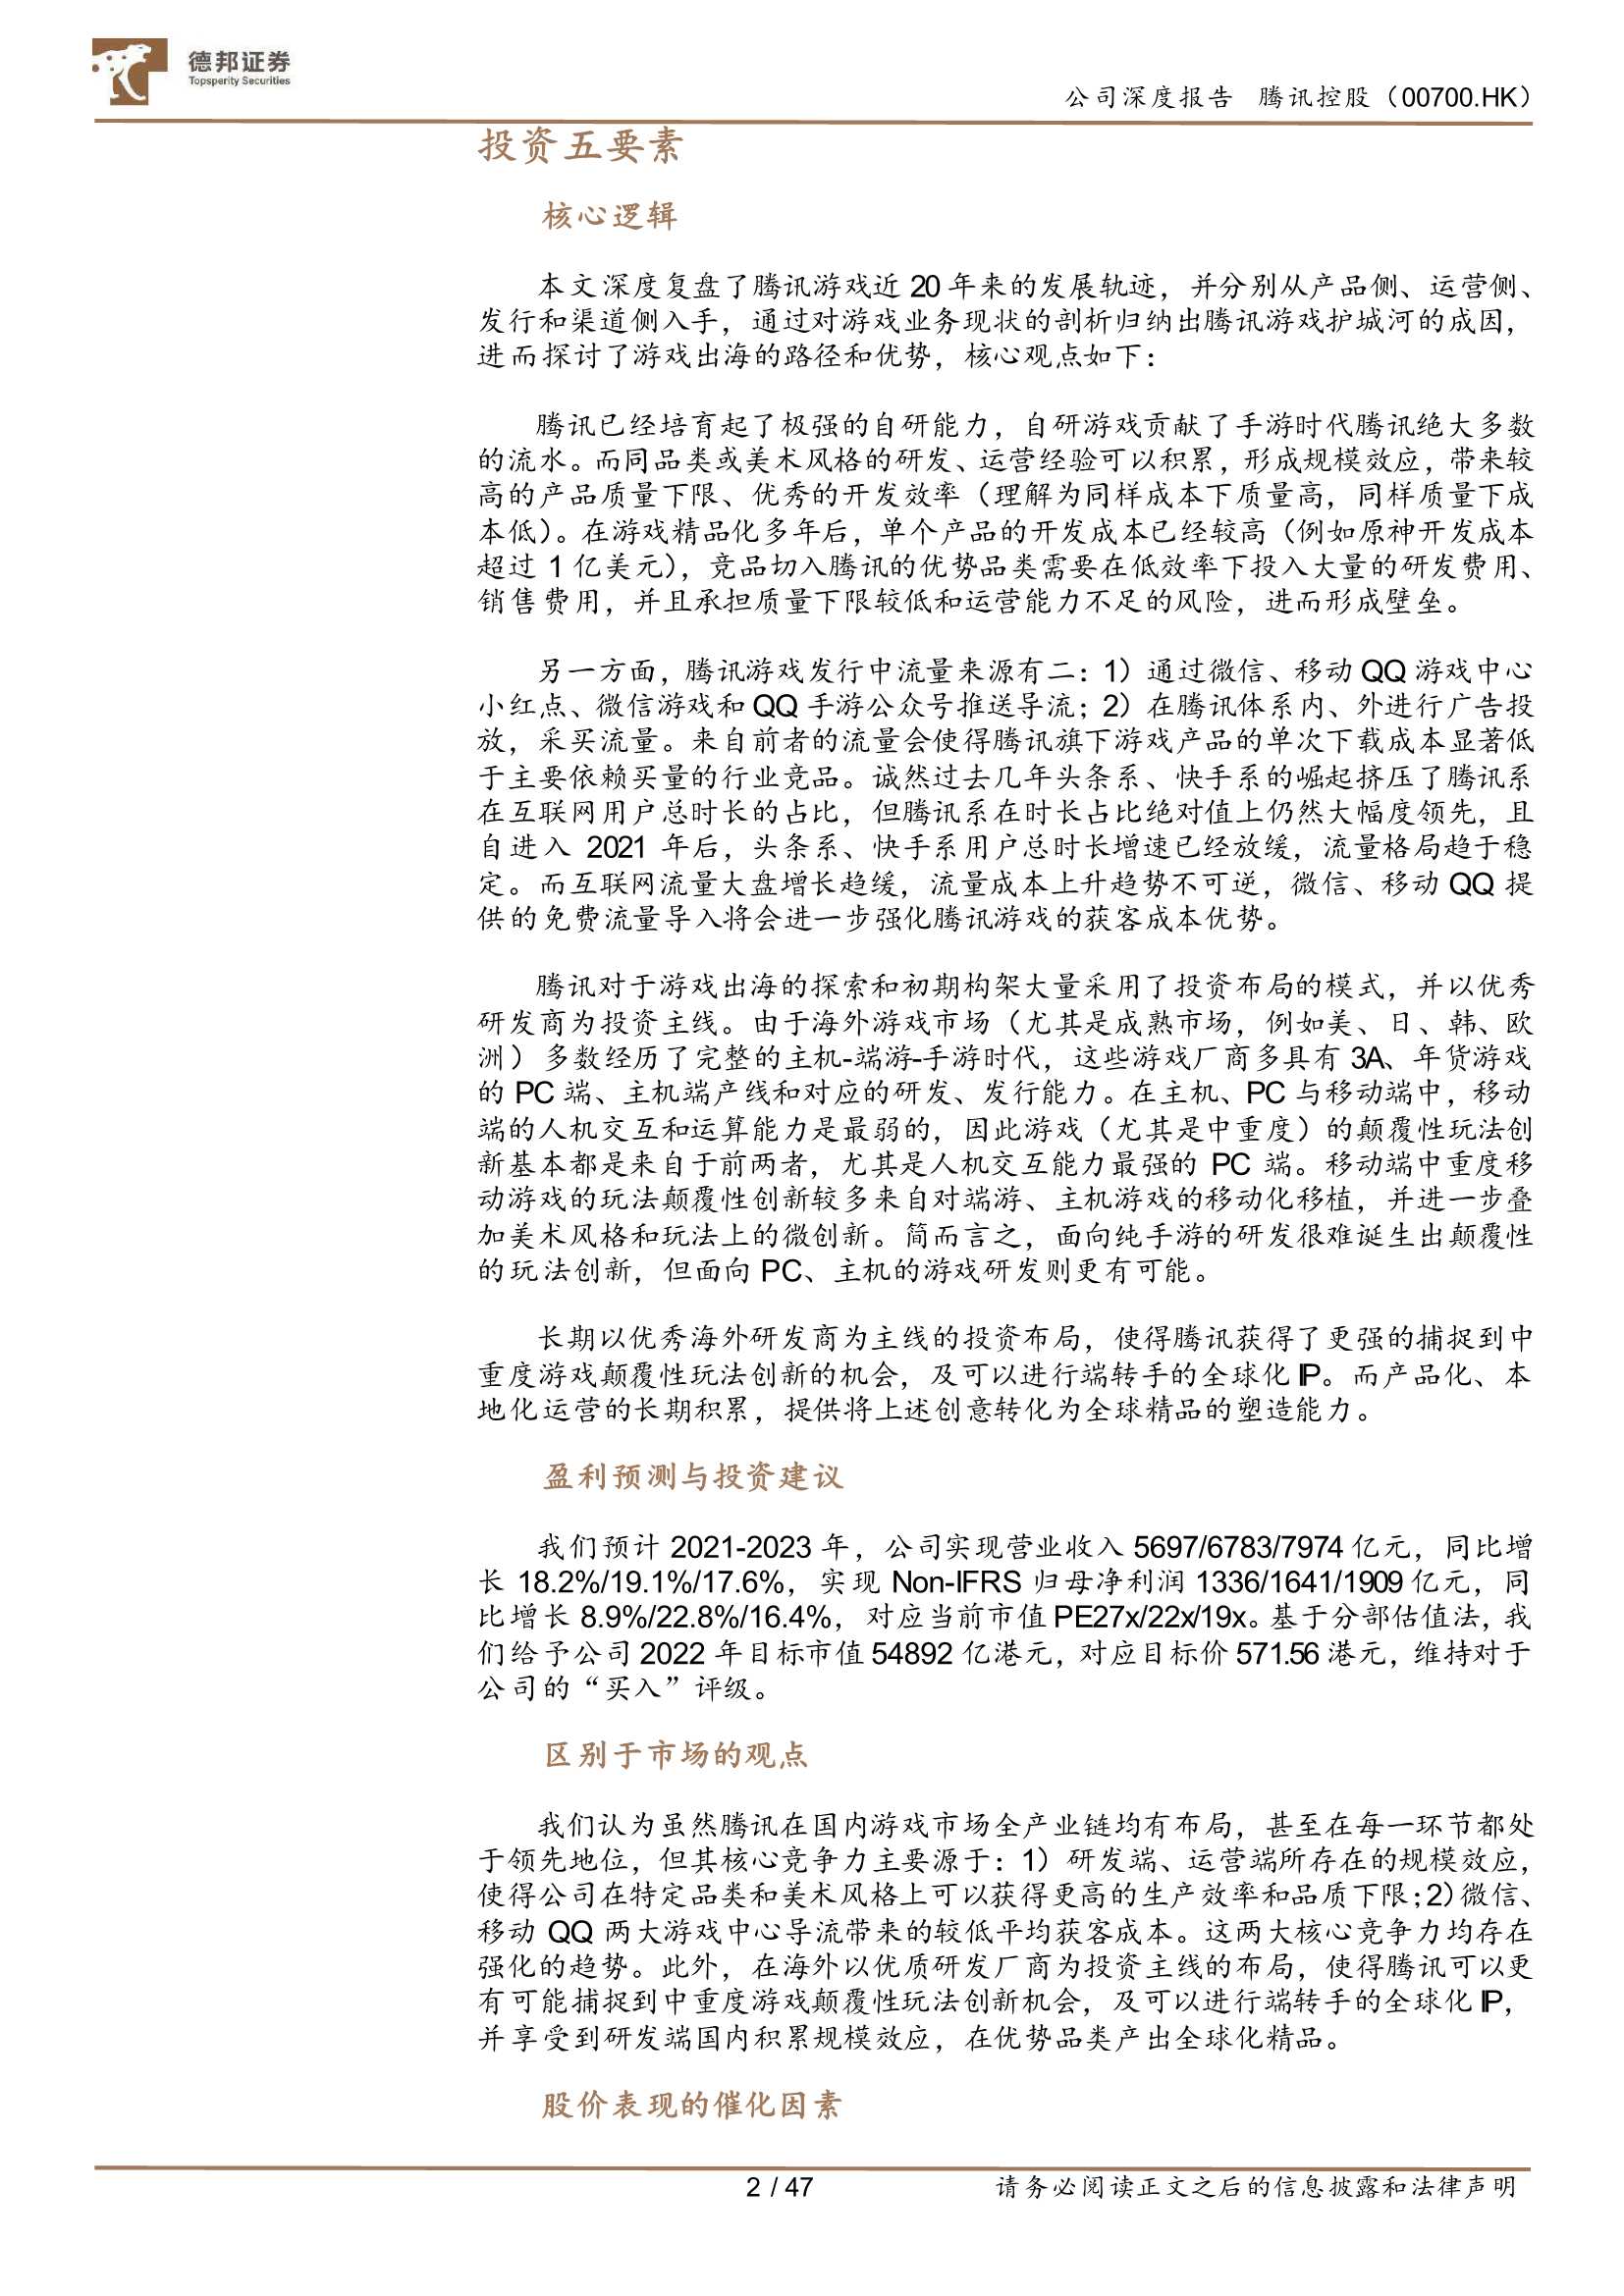 德邦证券-腾讯控股-0700.HK-深度复盘-如何理解腾讯游戏的护城河？-20211228-47页